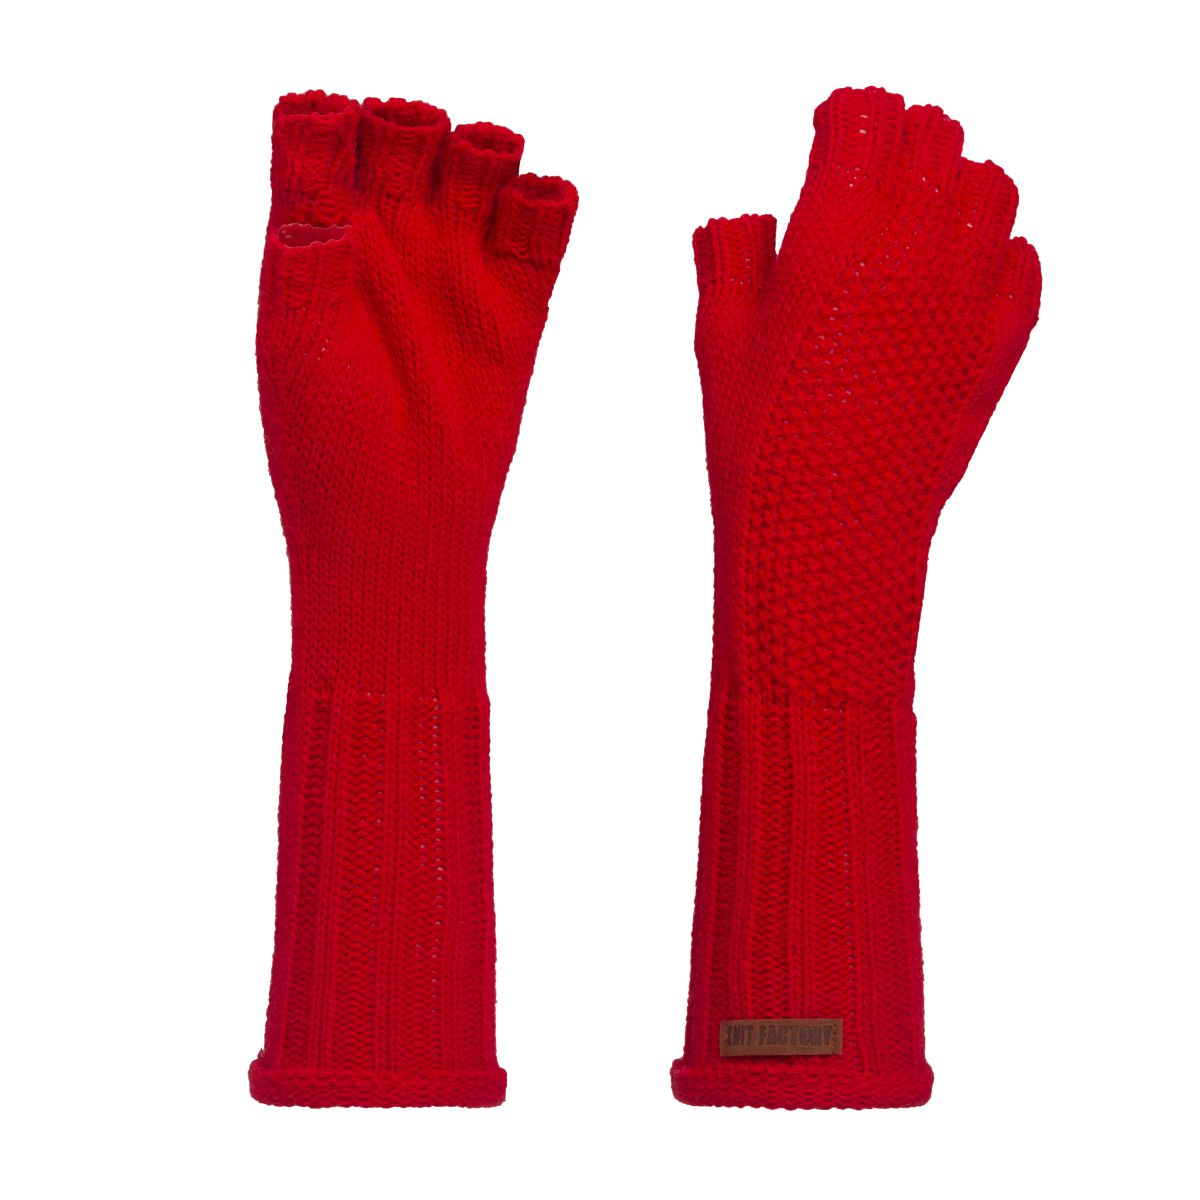 ika handschoenen bright red